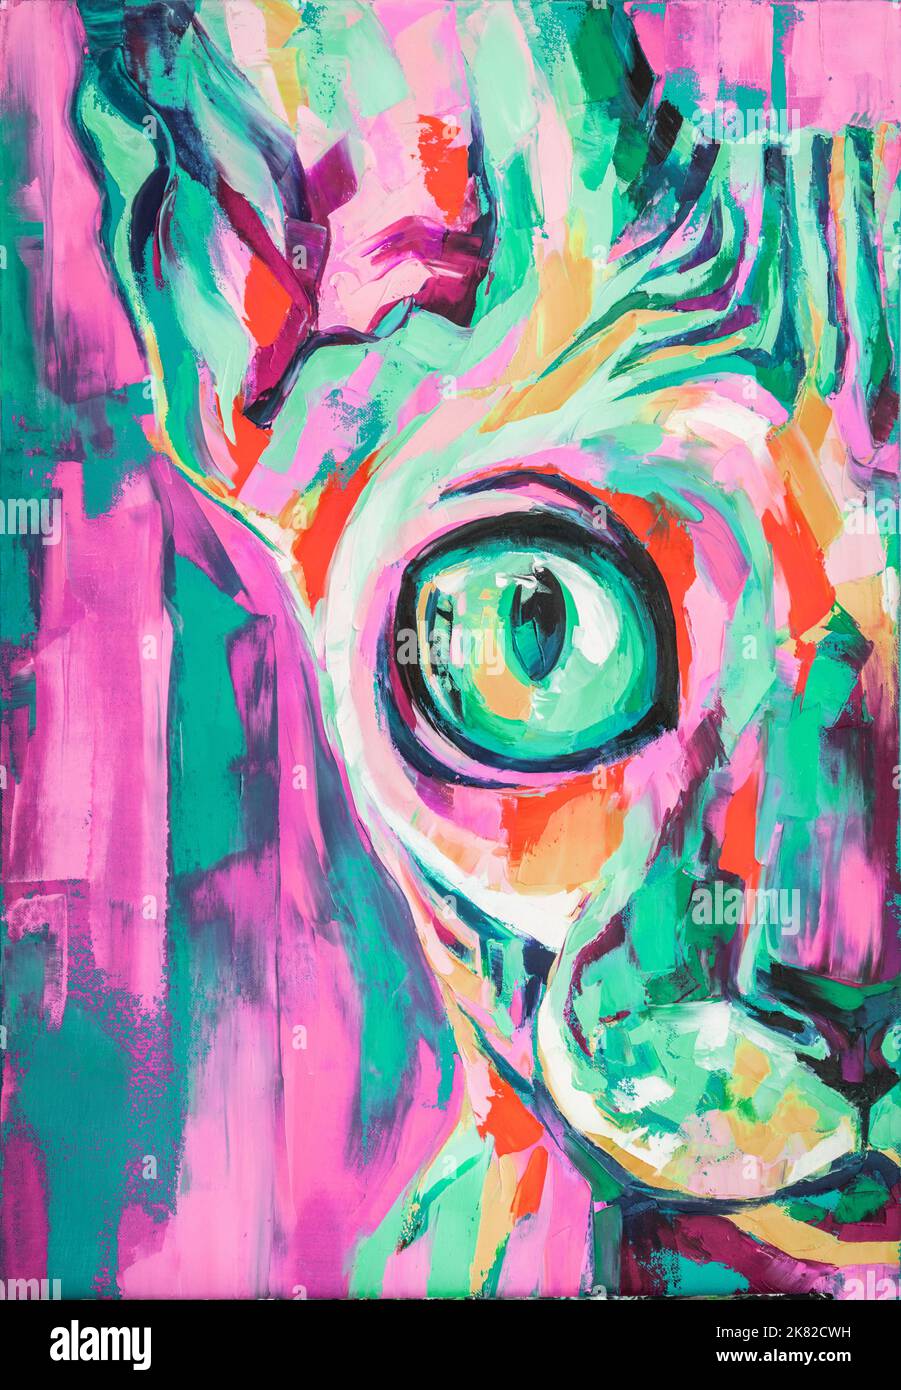 Huile phoenix Cat portrait peinture dans des tons fluorescents. Peinture conceptuelle d'un museau de chat. Gros plan d'une peinture à l'huile et couteau à palette sur toile. Banque D'Images